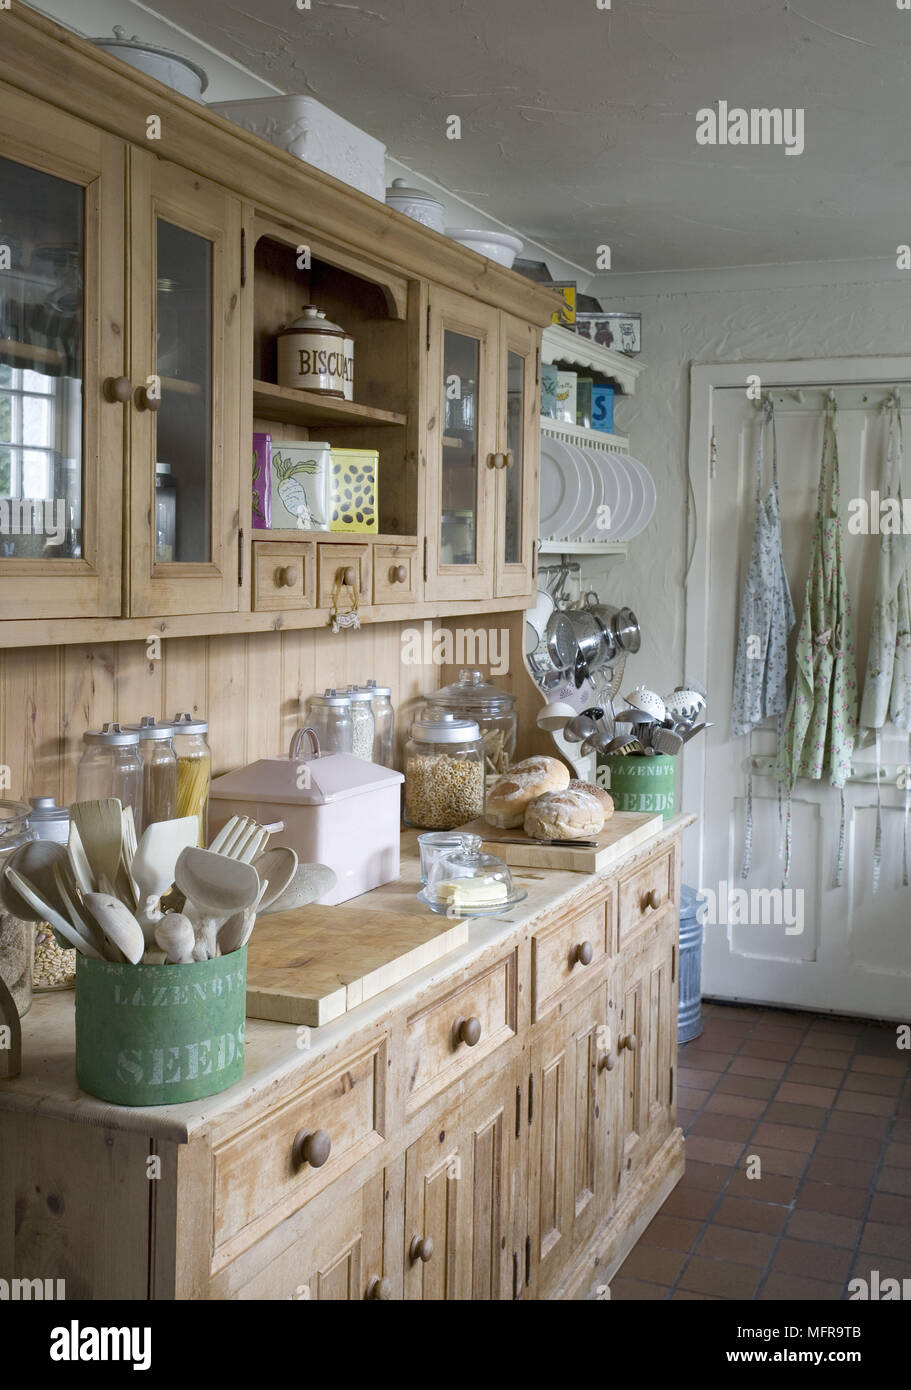 Küchenutensilien auf Küche im Landhausstil Kommode Stockfotografie - Alamy